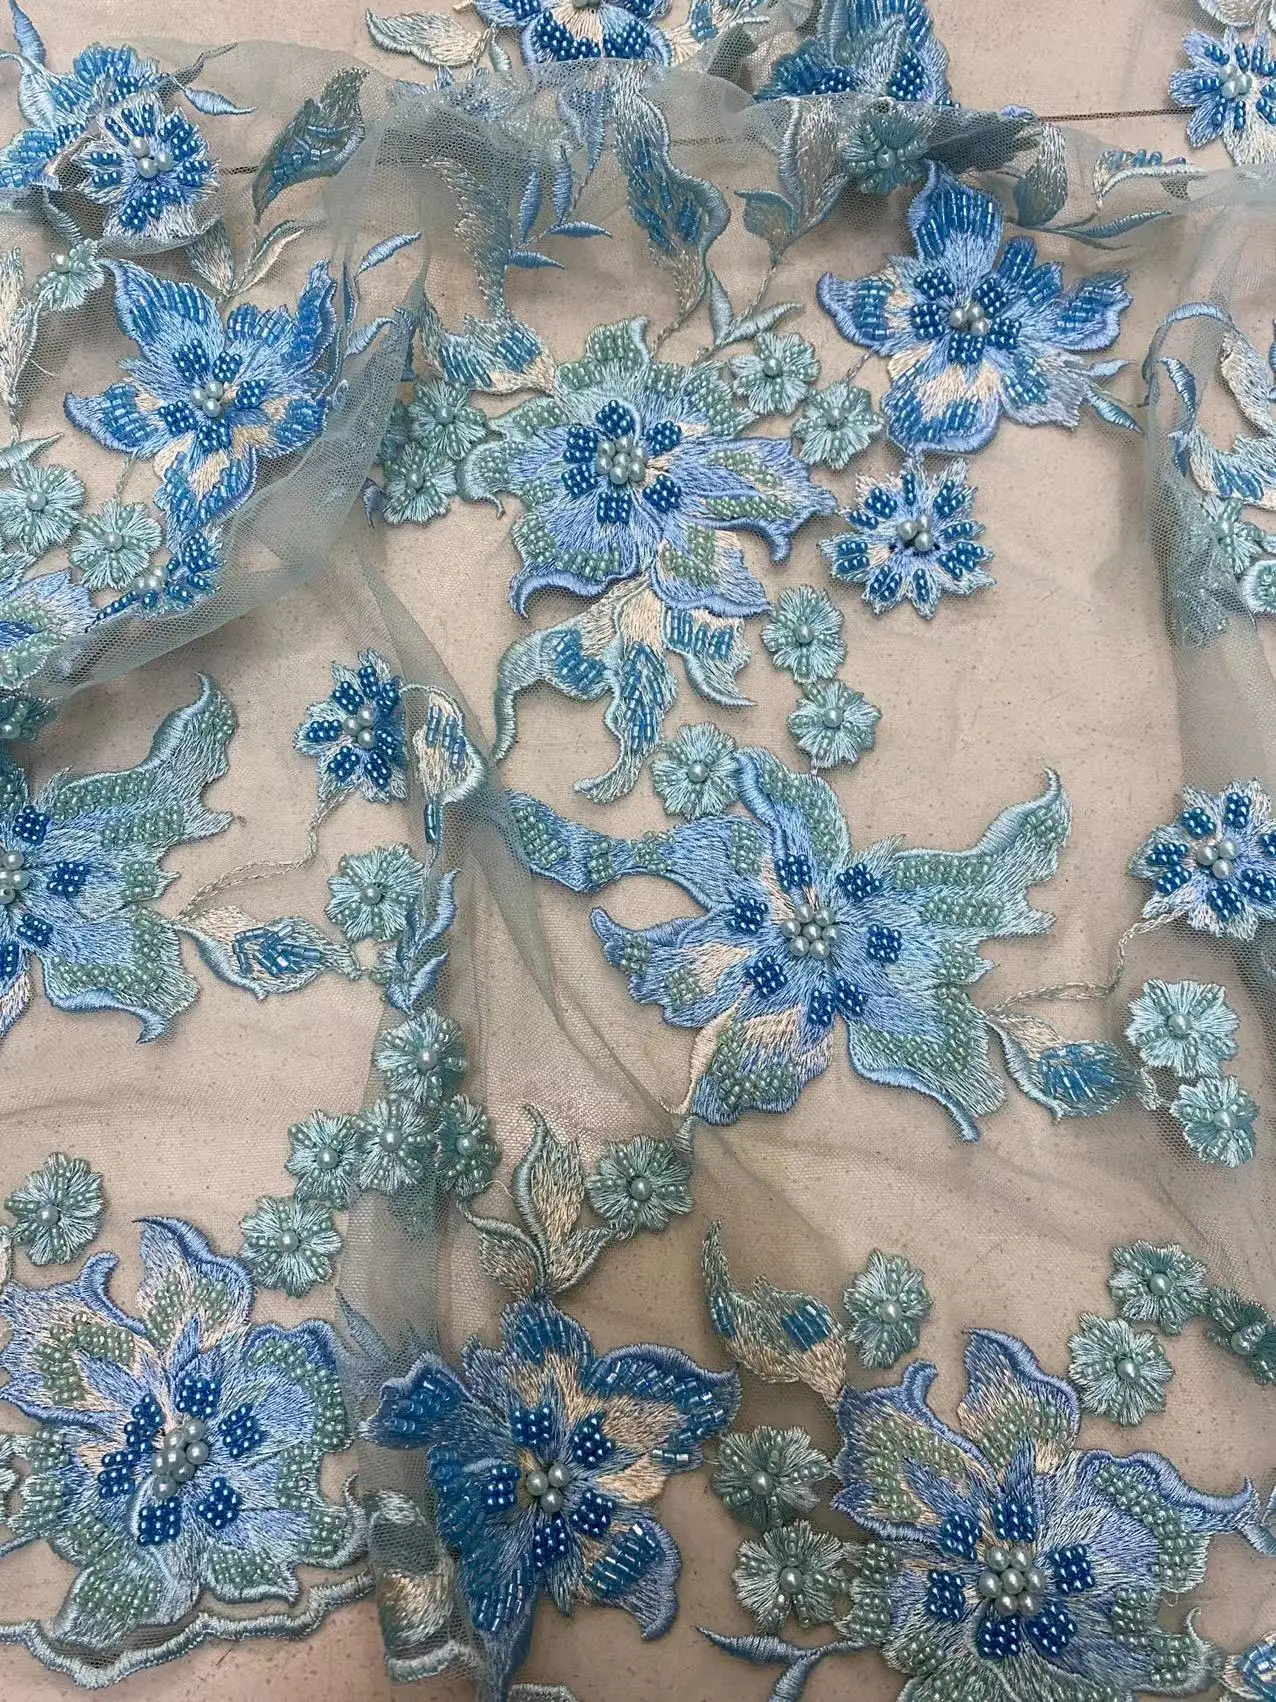 2023 qualidade superior feito à mão tecido requintado pérolas bordado francês malha fio africano grânulo rendas para vestidos de festa casamentos